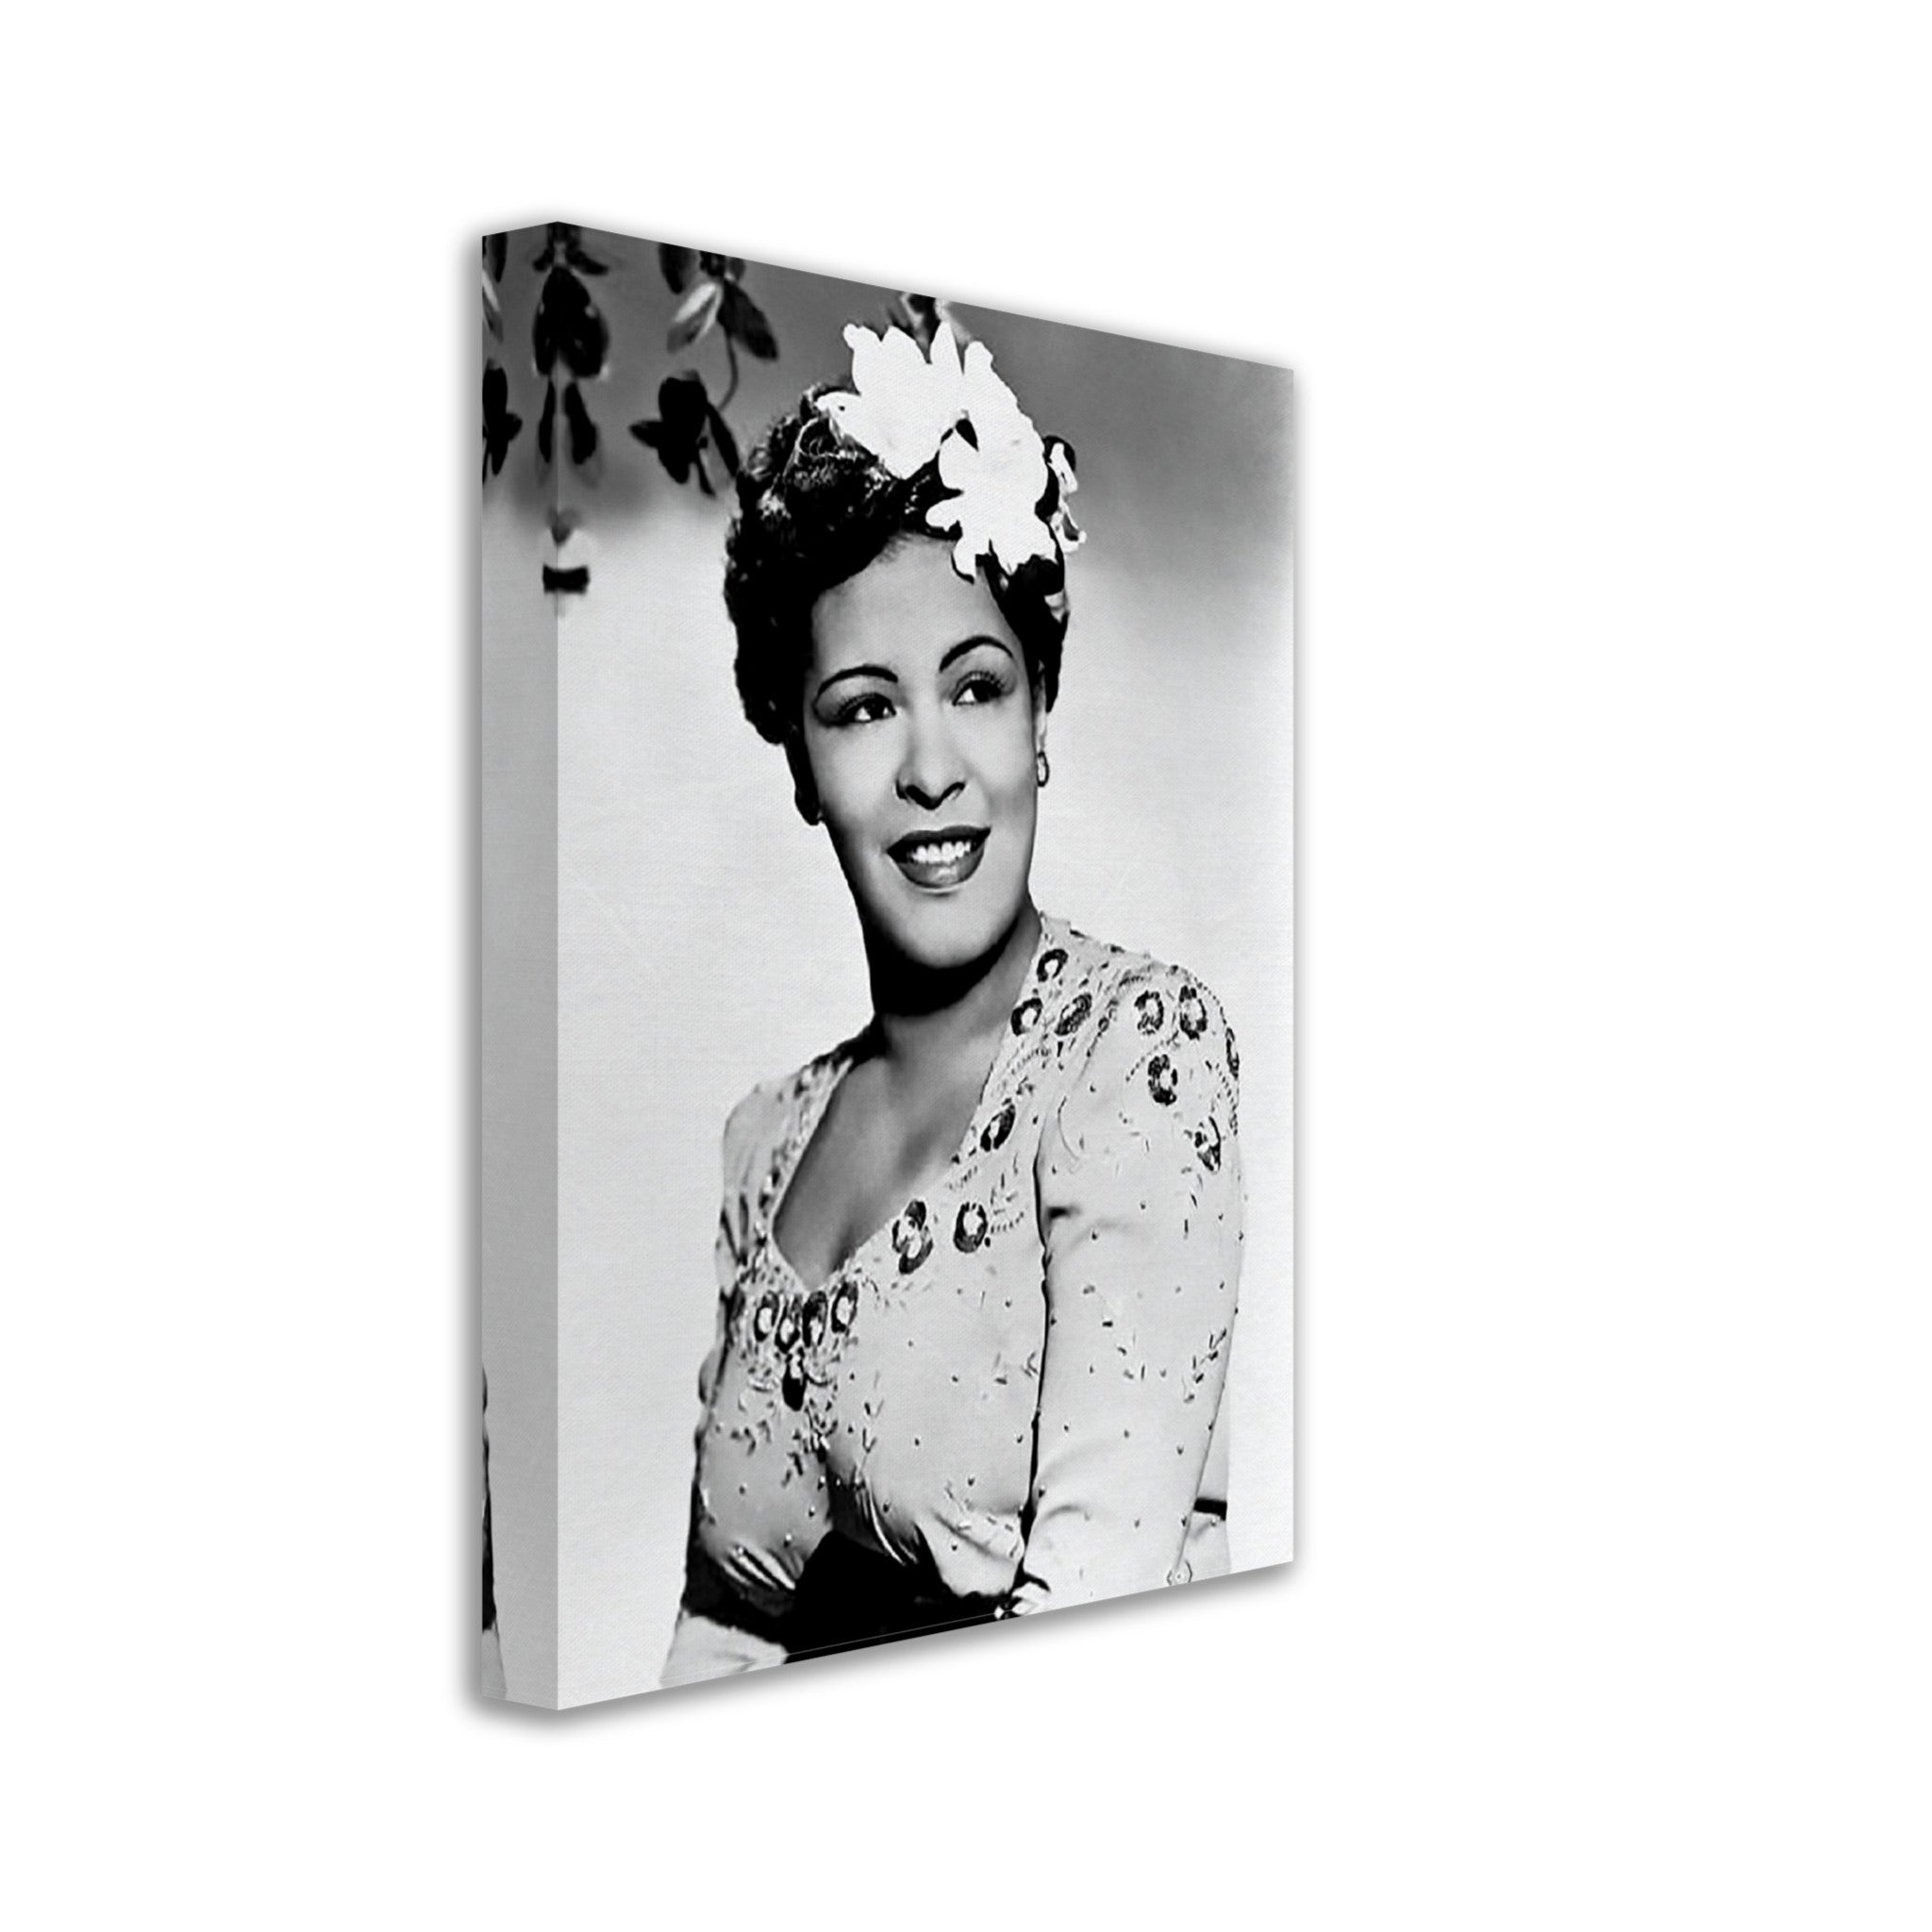 Billie Holiday Canvas, Lady Day Soul Singer, Vintage Billie Holiday Canvas Print - Legend Of Soul Music - WallArtPrints4U